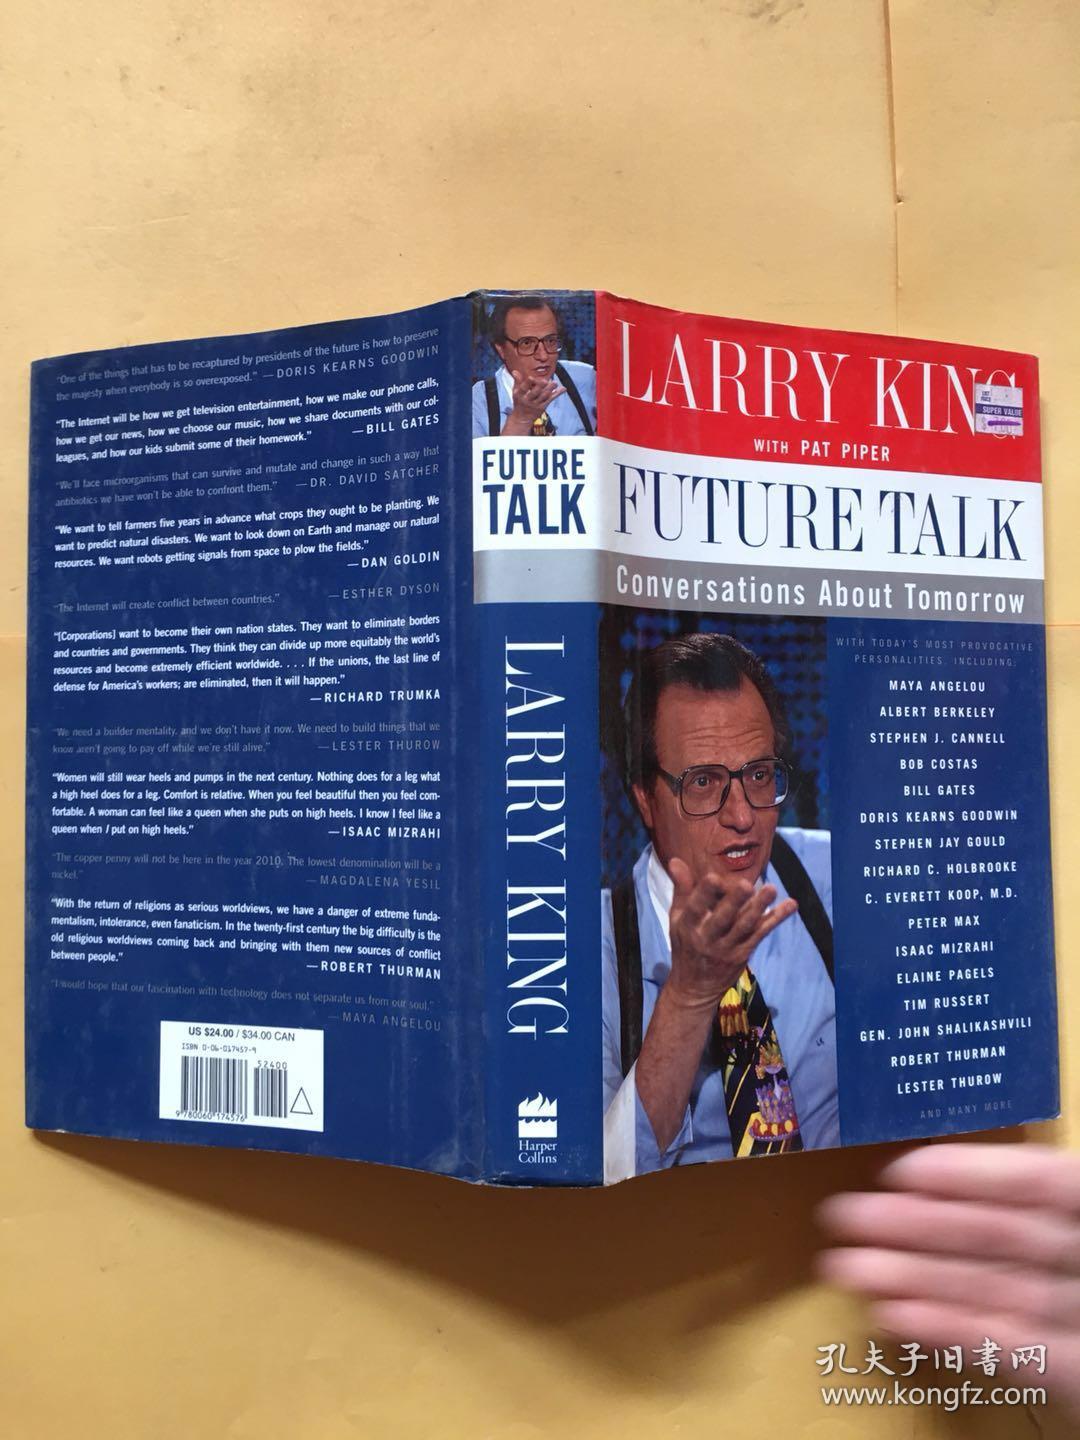 LARRY KING  FUTURE TALK